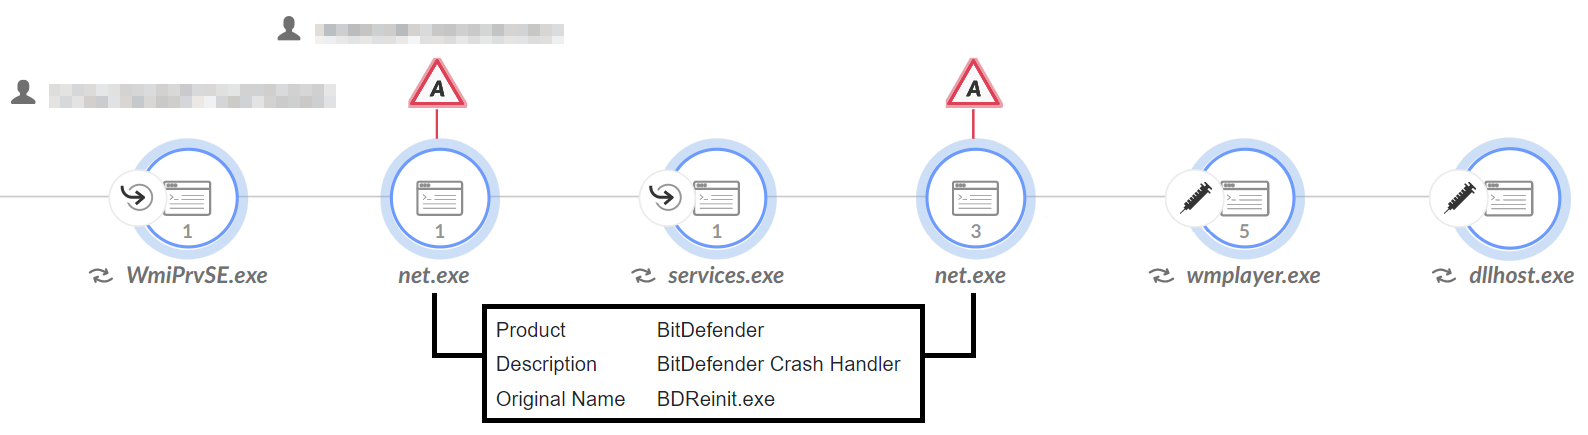 画像 10 は Cortex XDR のダイアグラムのスクリーンショットです。ShadowPad のプロセス ツリーには、「Product: BitDefender、Description: BitDefender Crash Handler、Original Name: BDReinit.exe」が表示されています。情報の一部は割愛してあります。